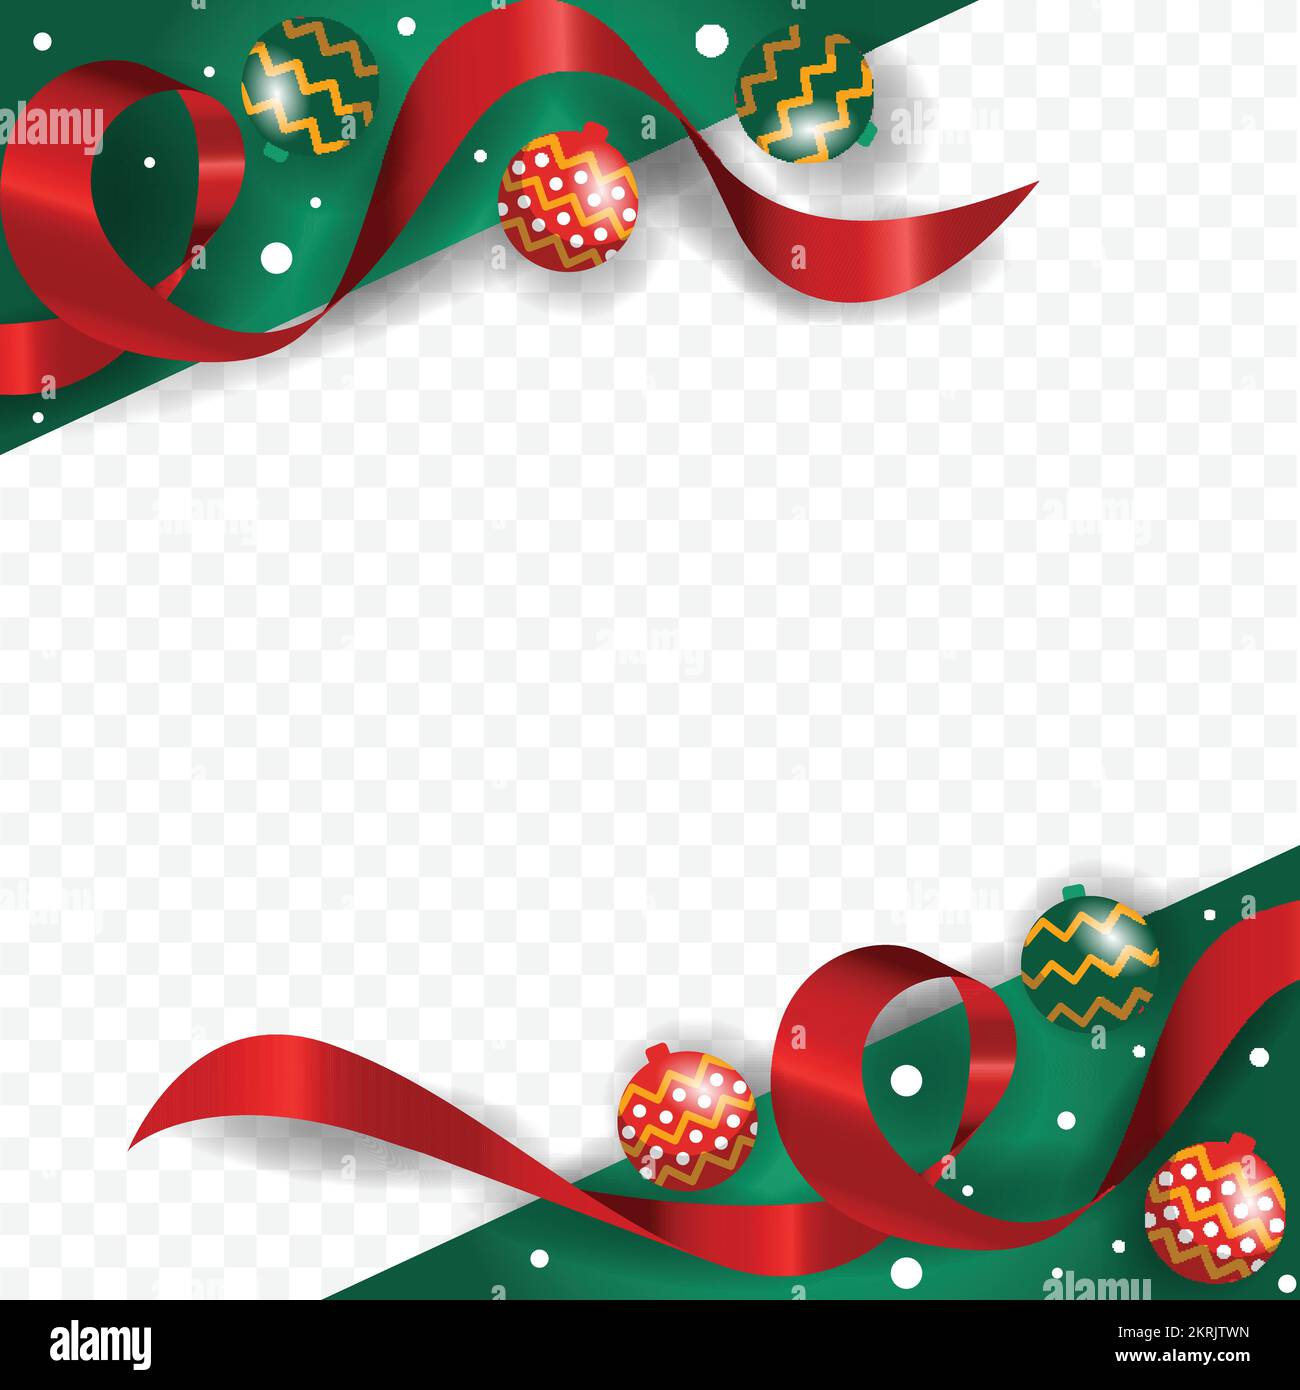 Joyeux Noël fond vert frais espace vide Design Illustration de Vecteur